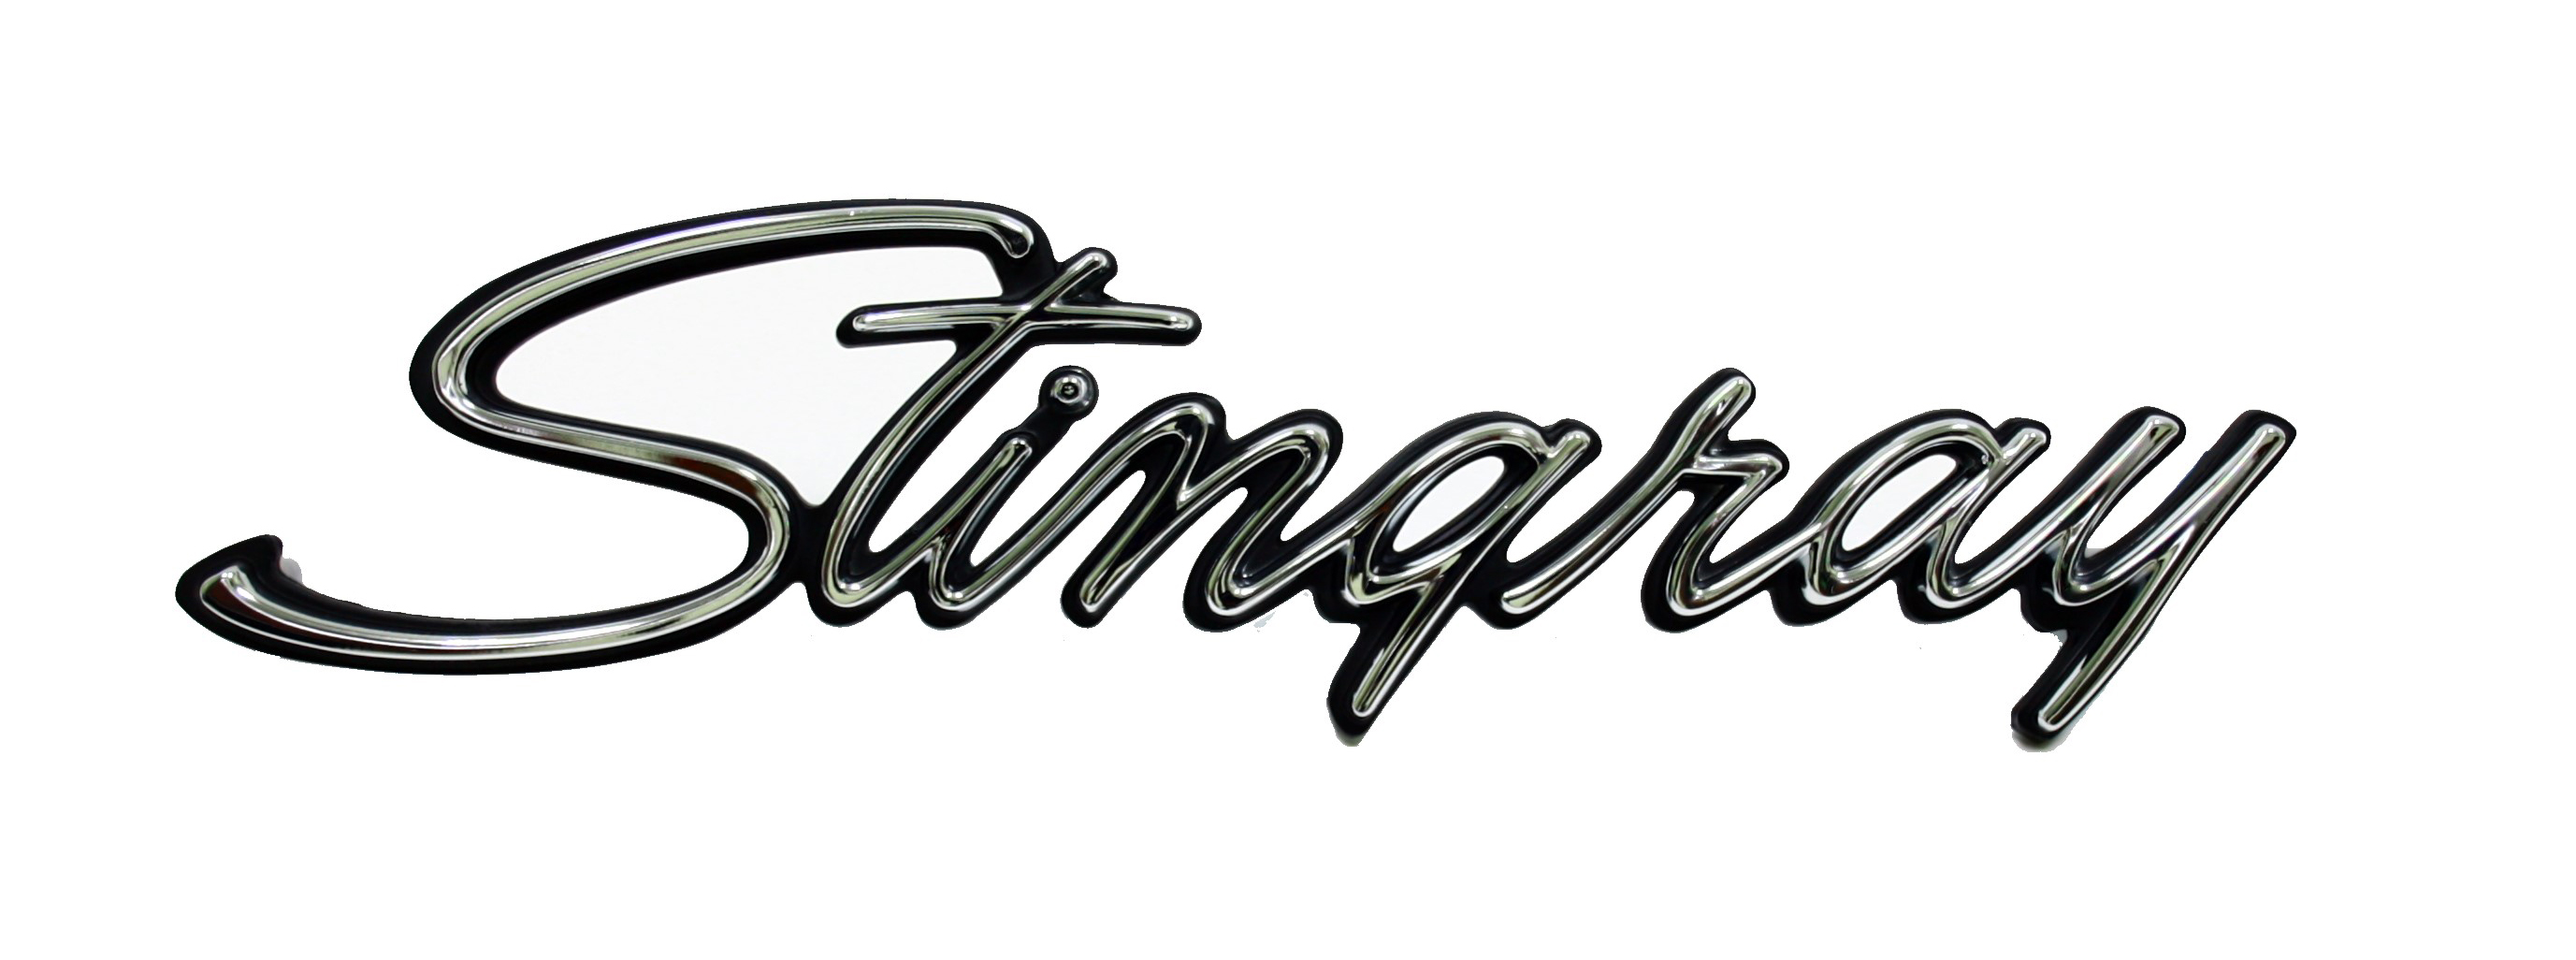 1974-1976 Corvette Side Emblem (Stingray)